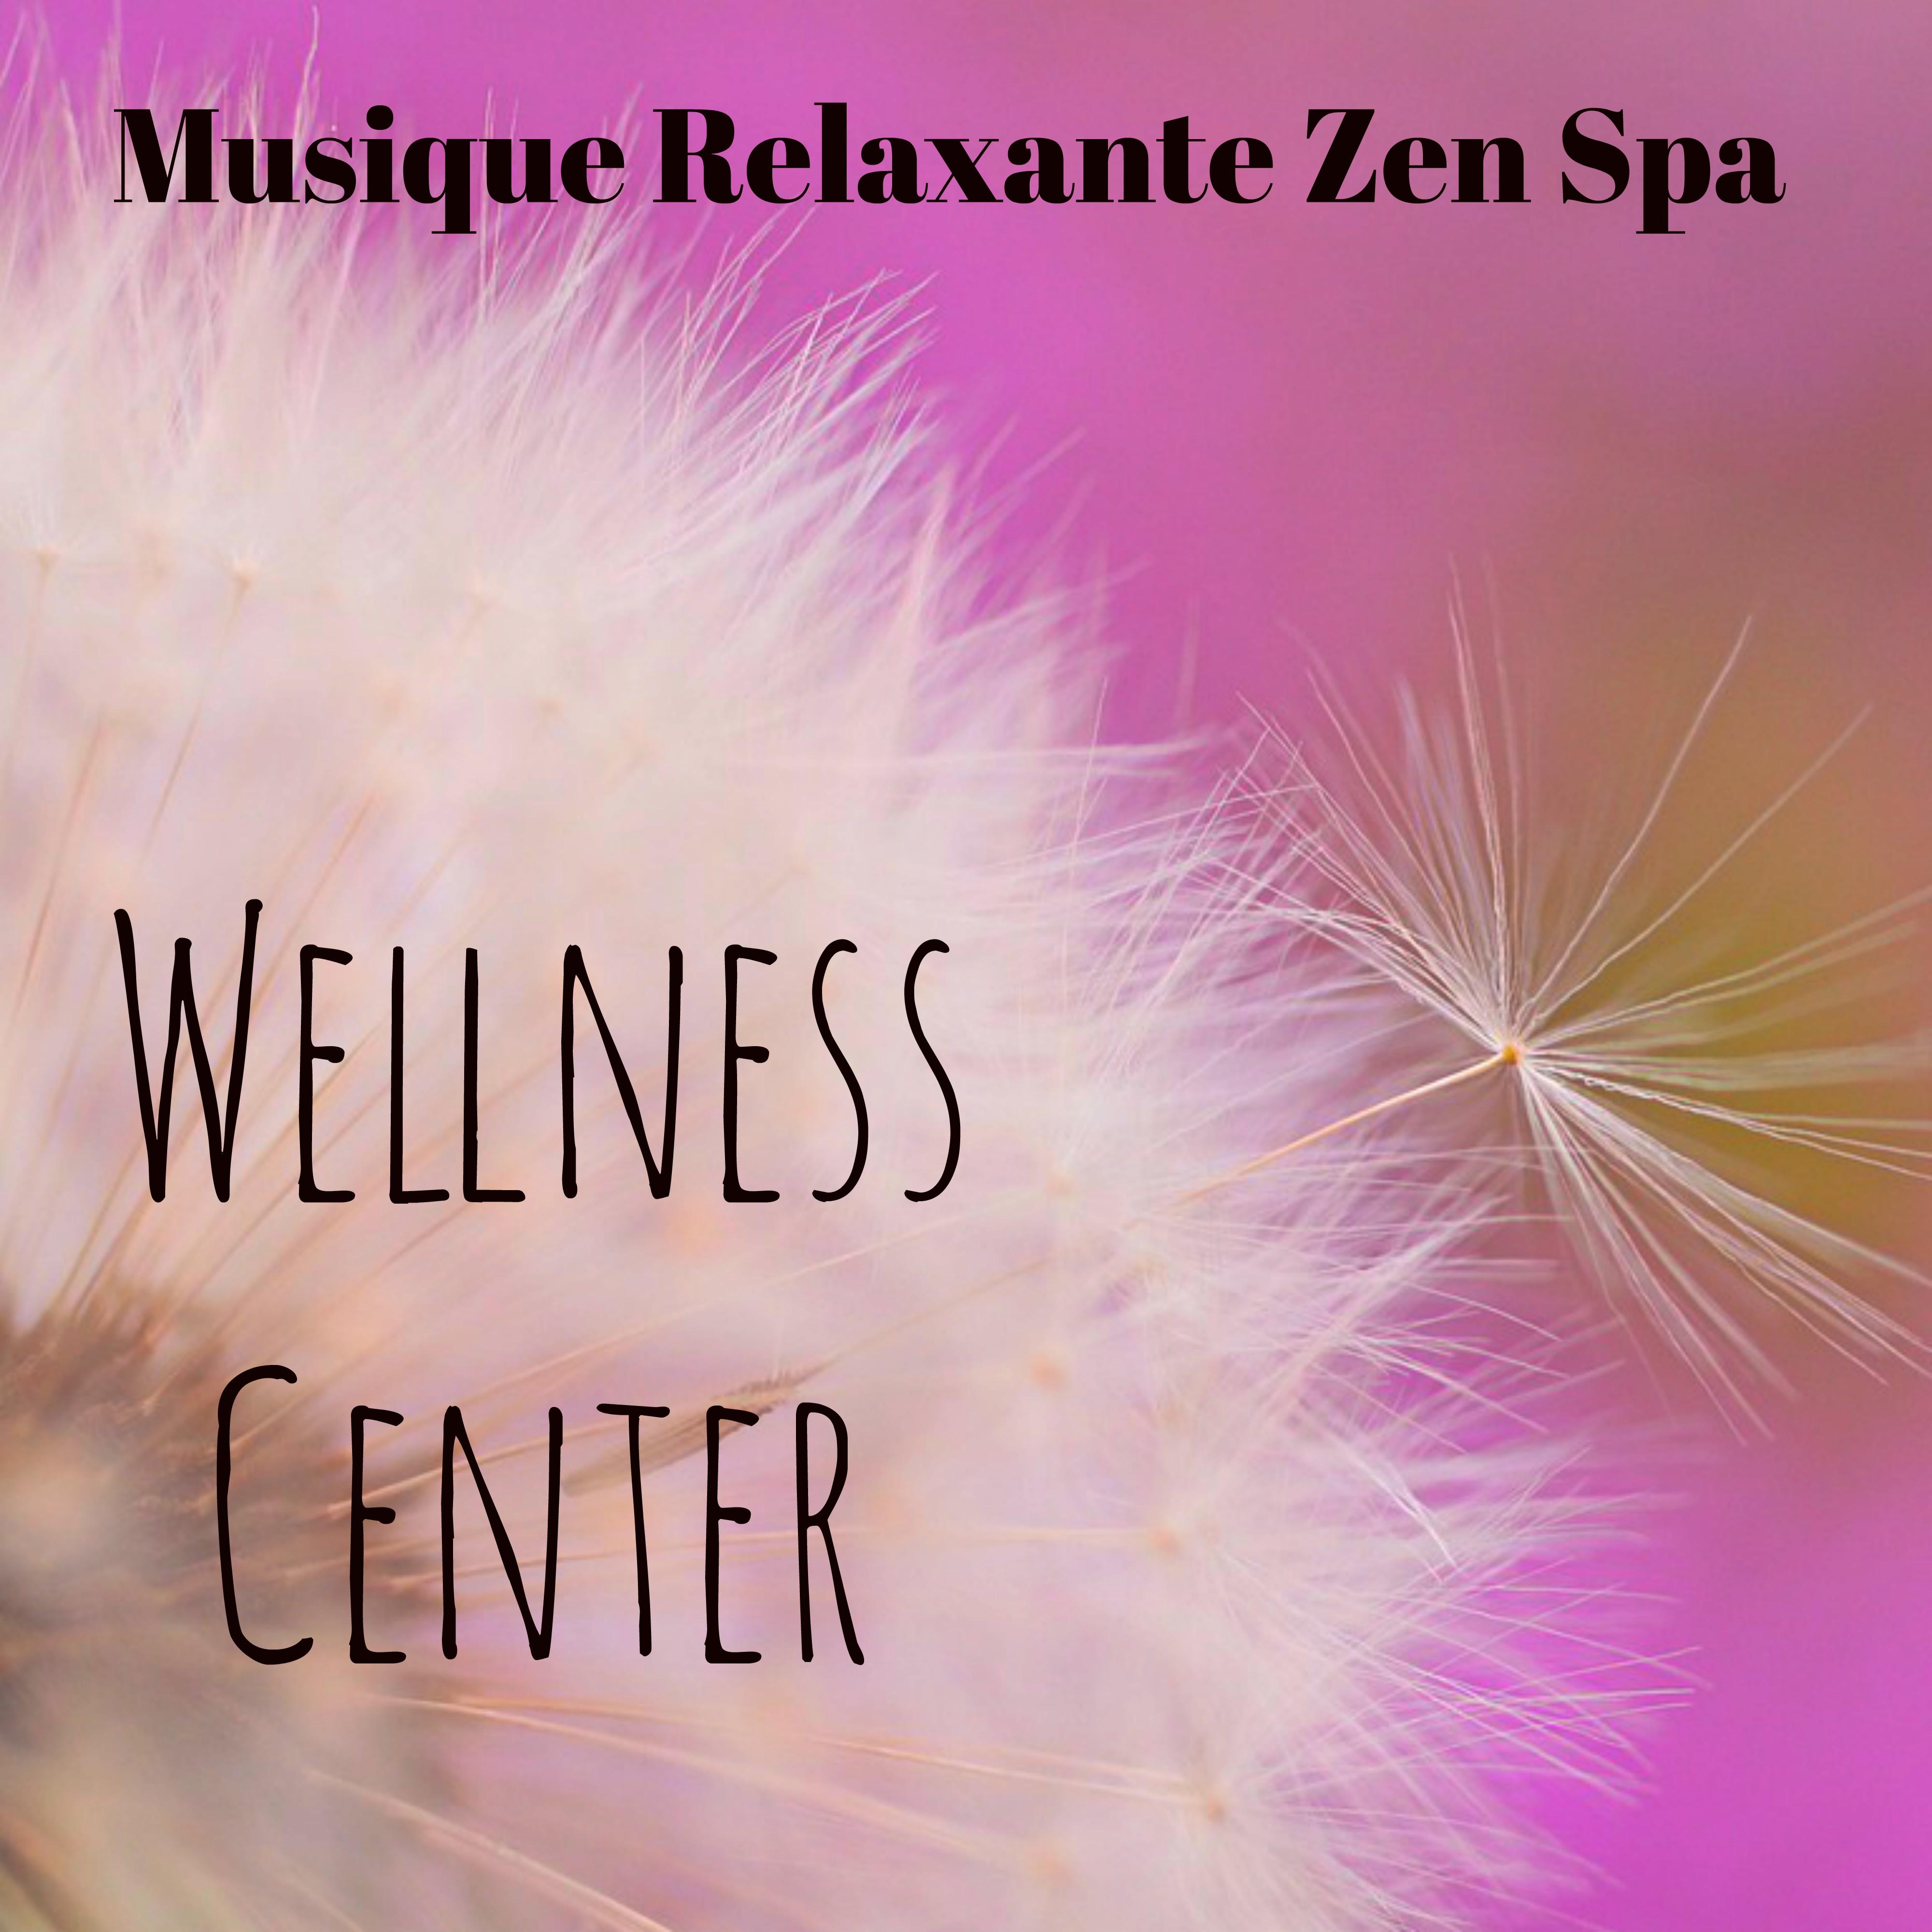 Wellness Center - Musique Relaxante Zen Spa pour Exercices de Concentration Massothérapie Santé et Bien Etre avec Sons de la Nature Instrumentaux Binauraux New Age